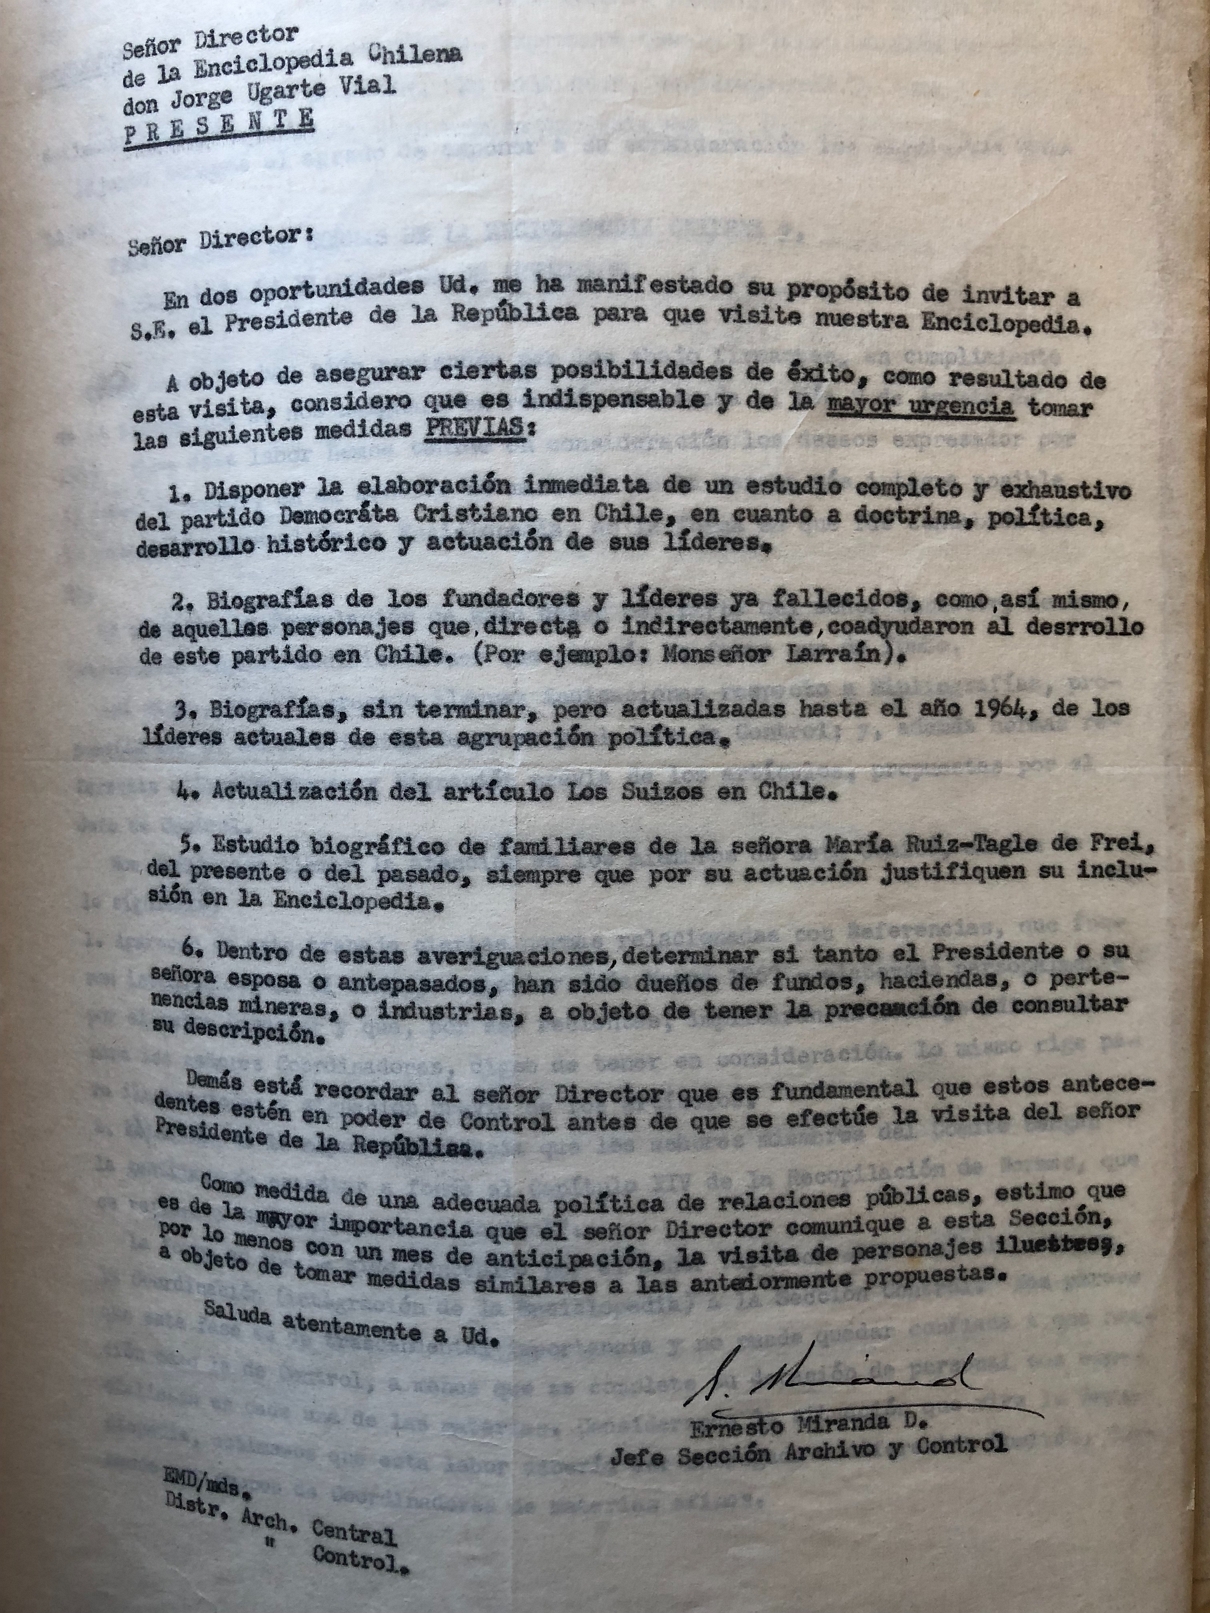 Carta del Jefe de la Sección Archivo y Control al Director de la Enciclopedia Chilena, por posible visita del Presidente Frei.